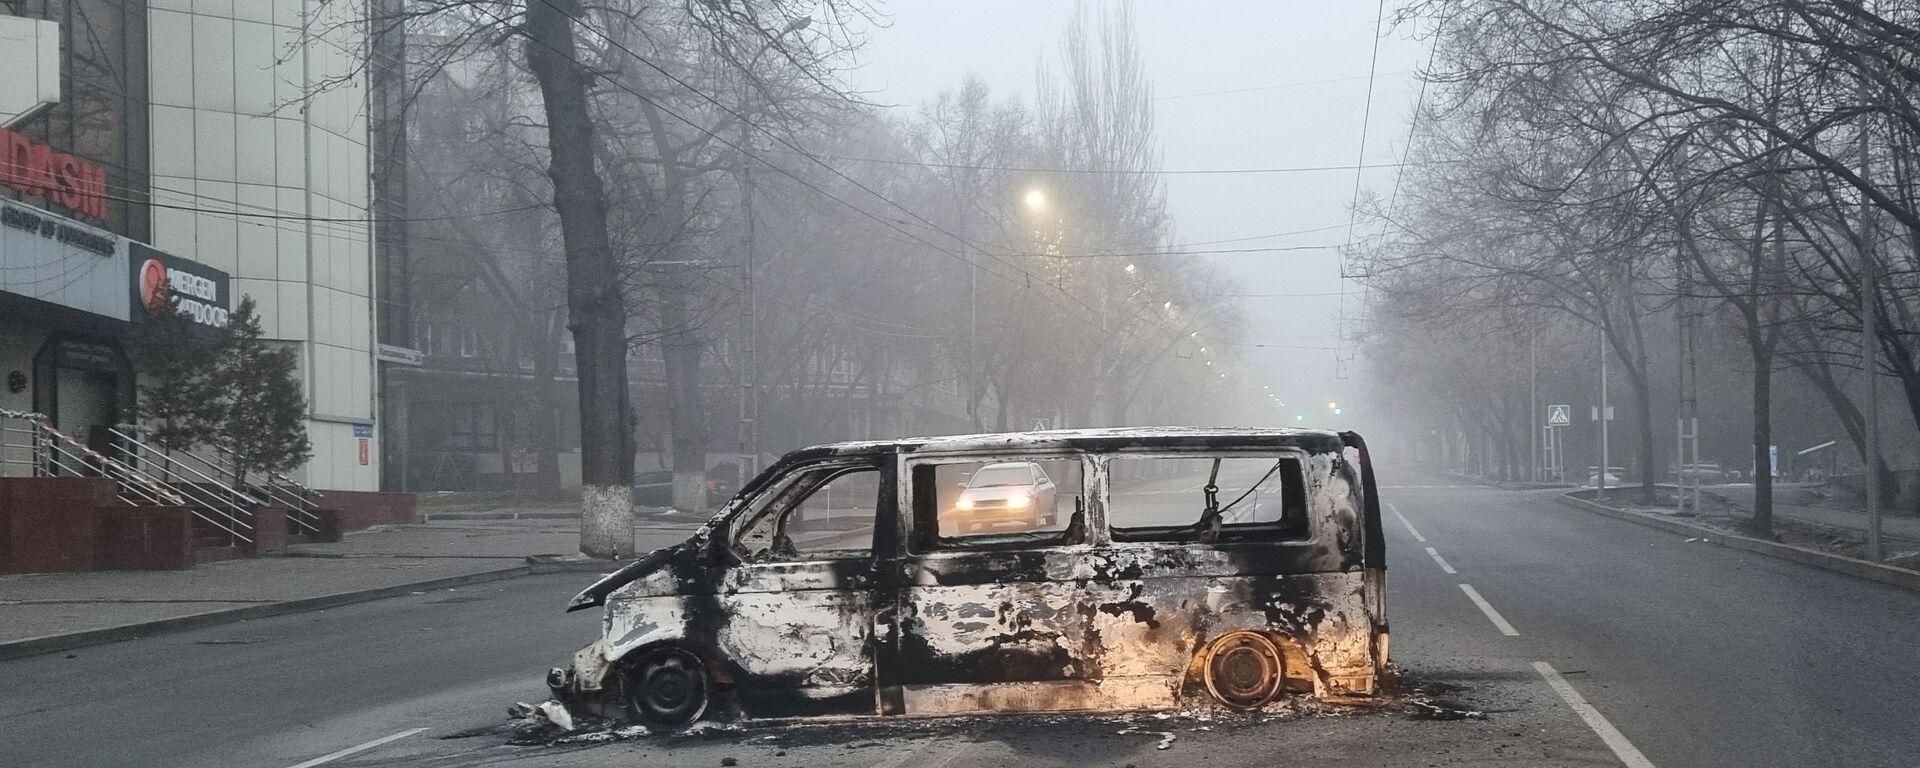 Автомобиль, сожженный во время протестов, вызванных повышением цен на топливо, на дороге в Алматы - Sputnik Литва, 1920, 10.01.2022